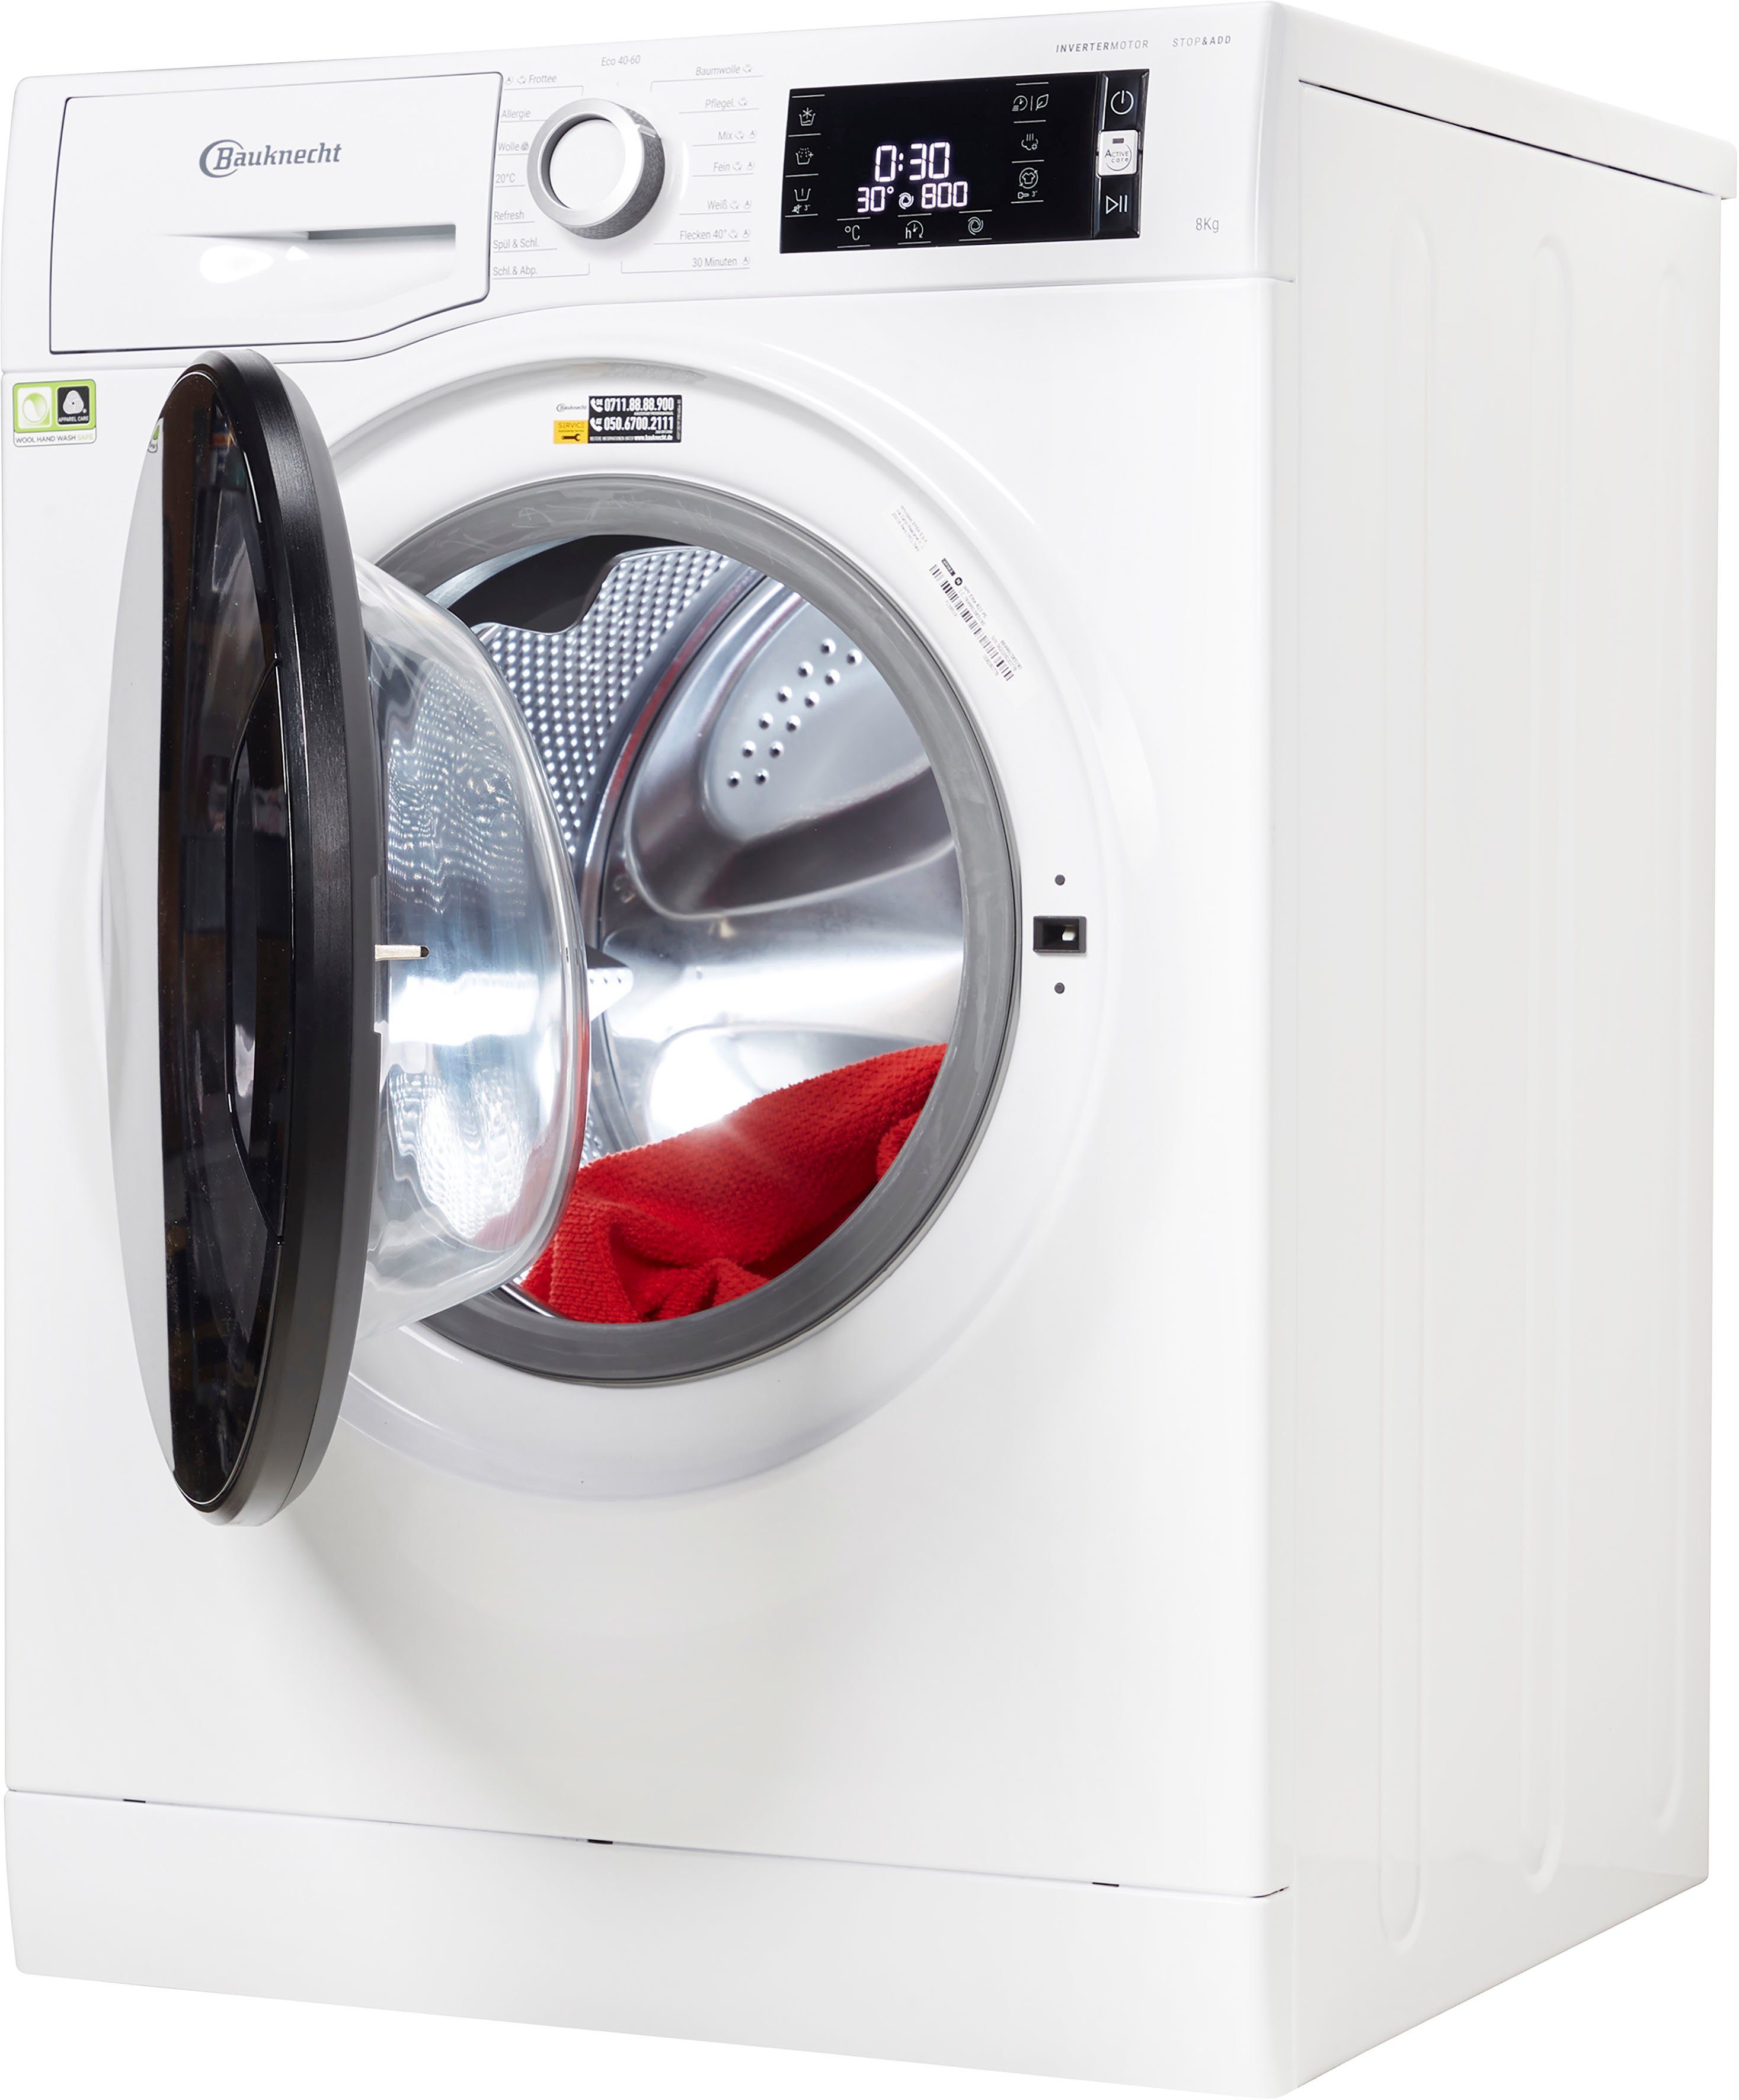 BAUKNECHT Waschmaschine WM ELITE 823 PS, 8 kg, 1400 U/min | Frontlader